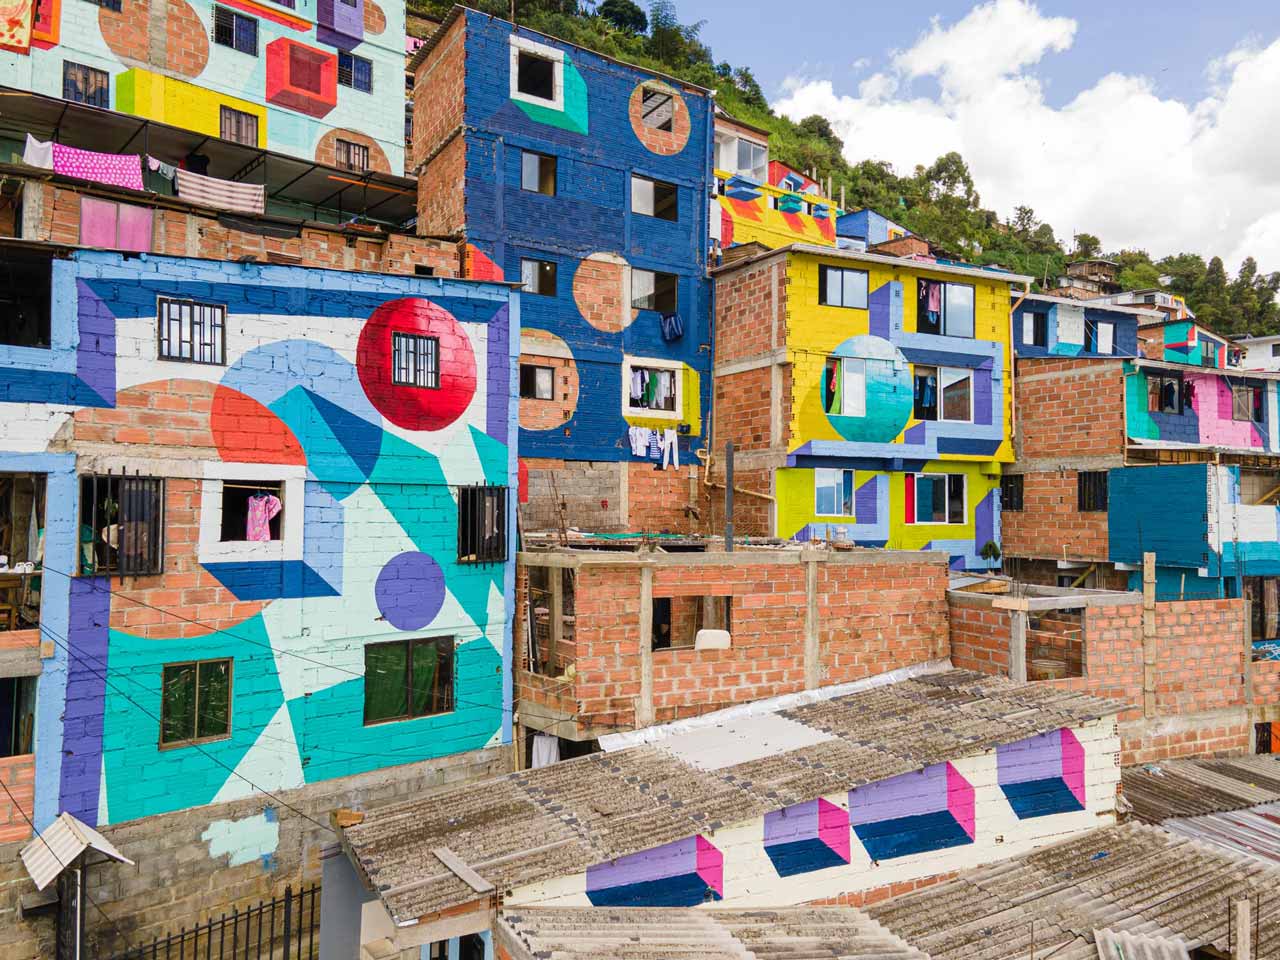 Constelaciones, el mural artístico más grande de Medellín, se potencia como nuevo destino turístico y cultural